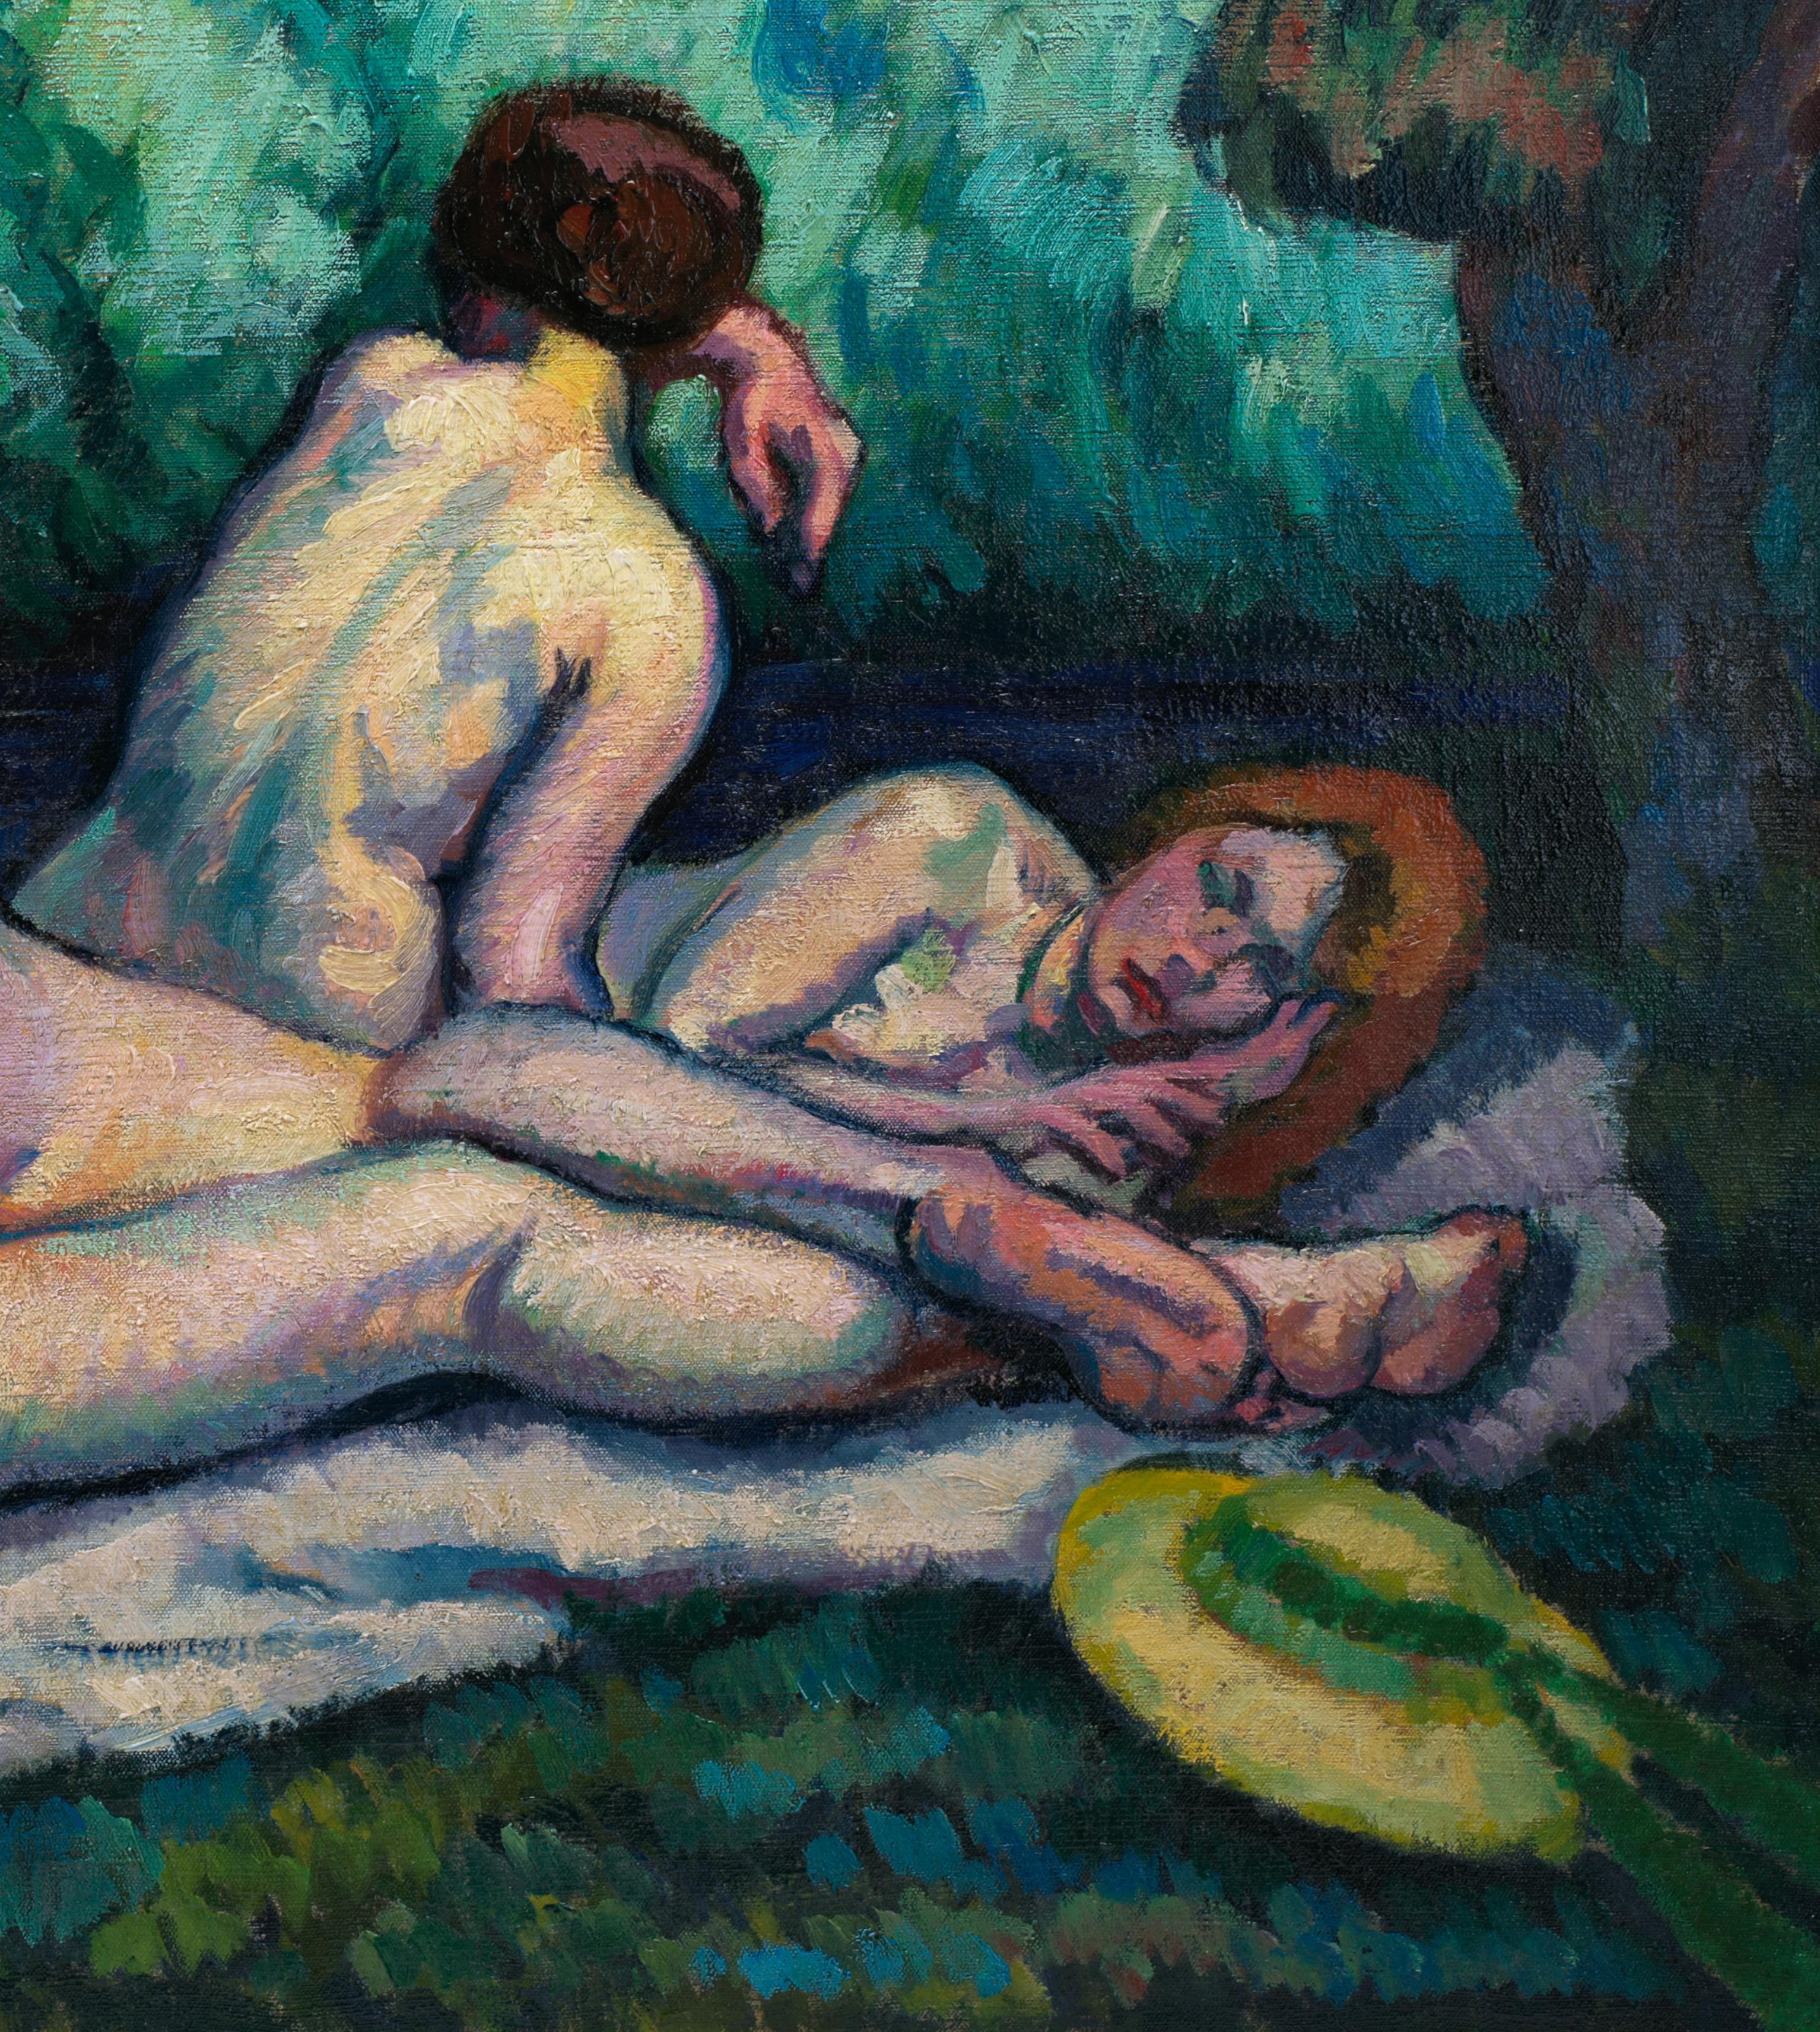 Öl auf Leinwand von Roger GRILLON (1881-1938), Frankreich, 1914. 